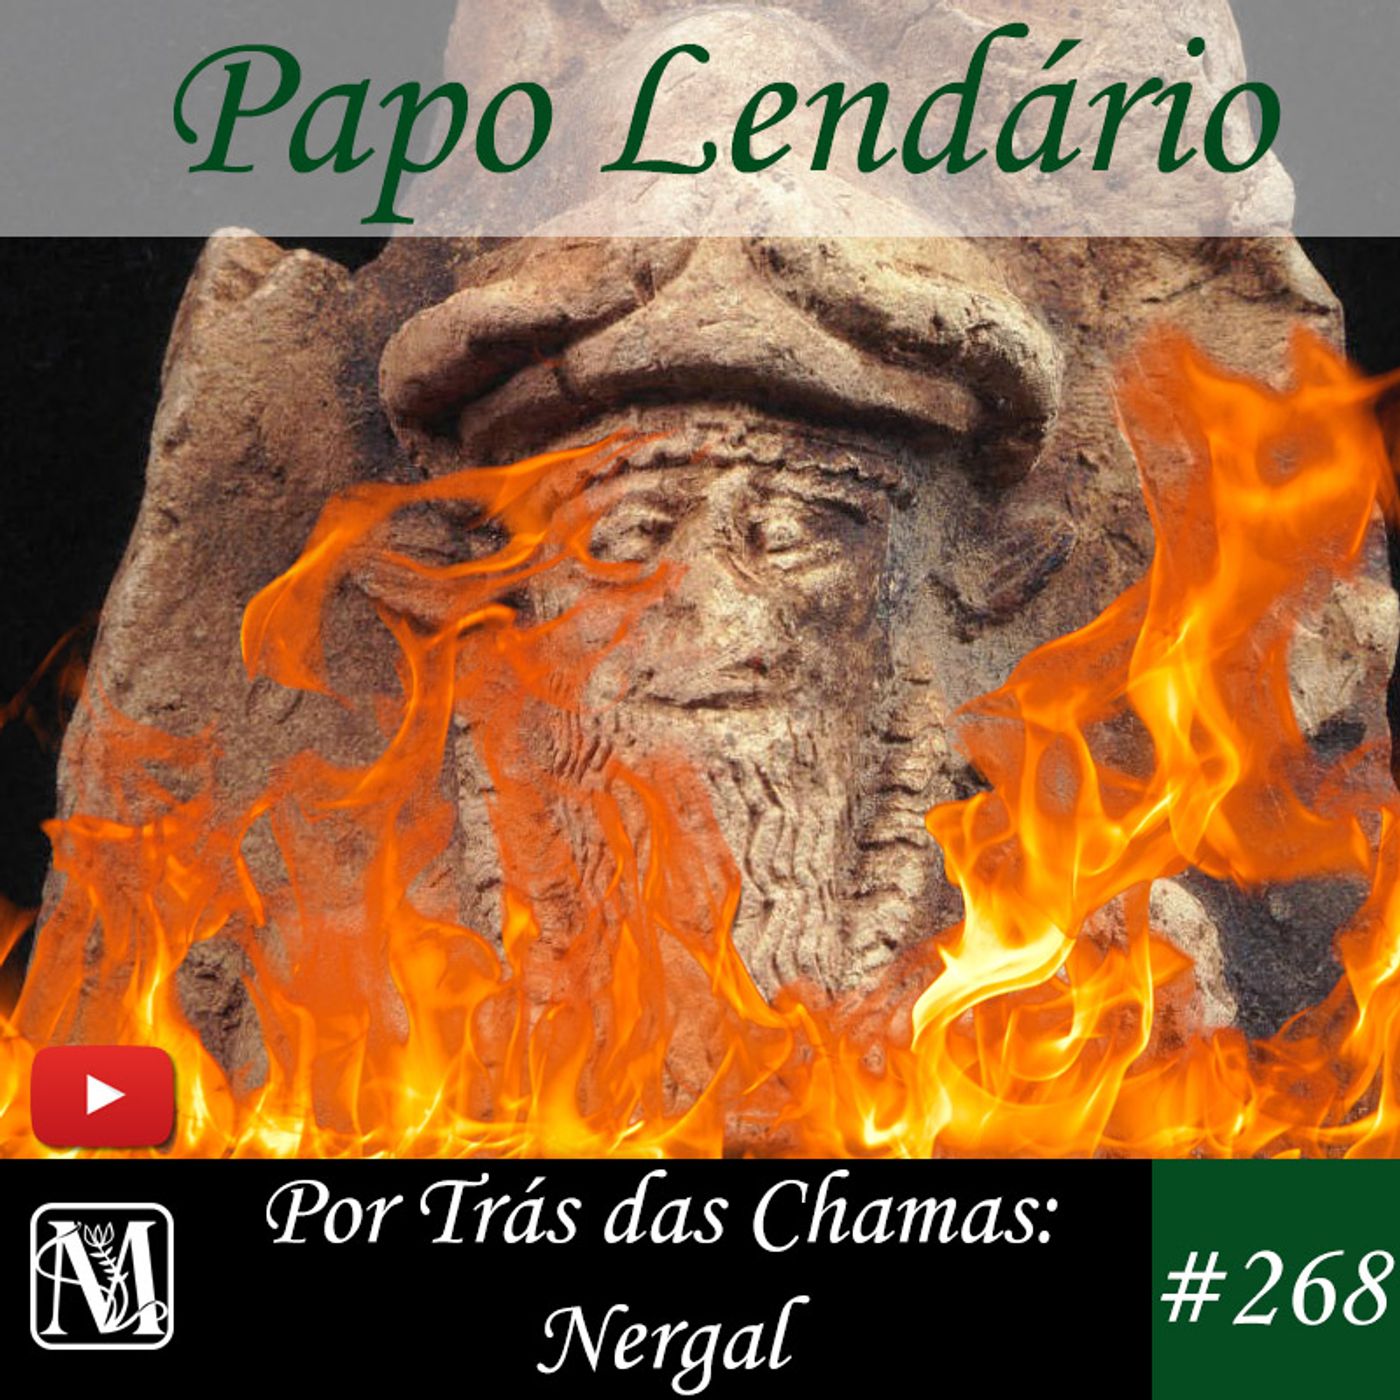 Papo Lendário #268 – Por Trás das Chamas: Nergal